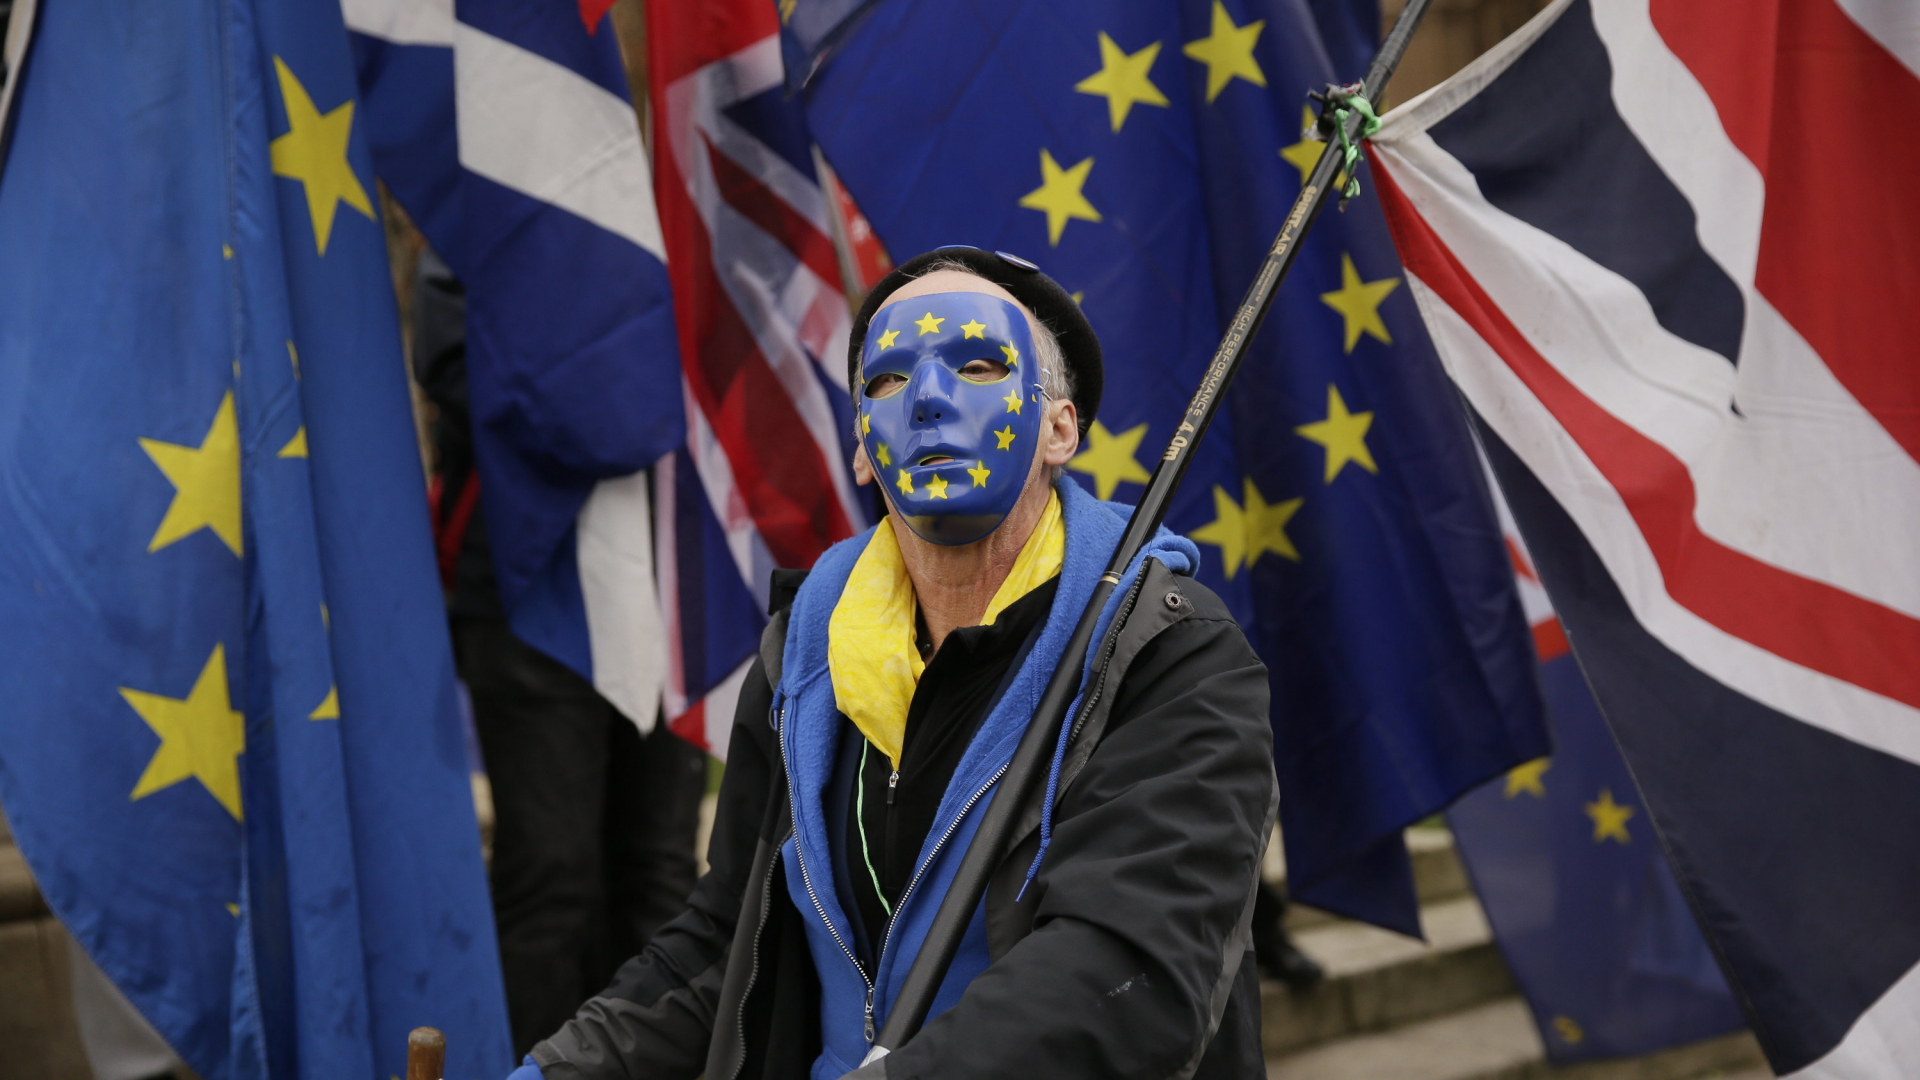 Ein Brexit-Gegner läuft in London auf einer Demonstration mit. Er trägt eine blaue Maske mit den Sternen der EU. | dpa